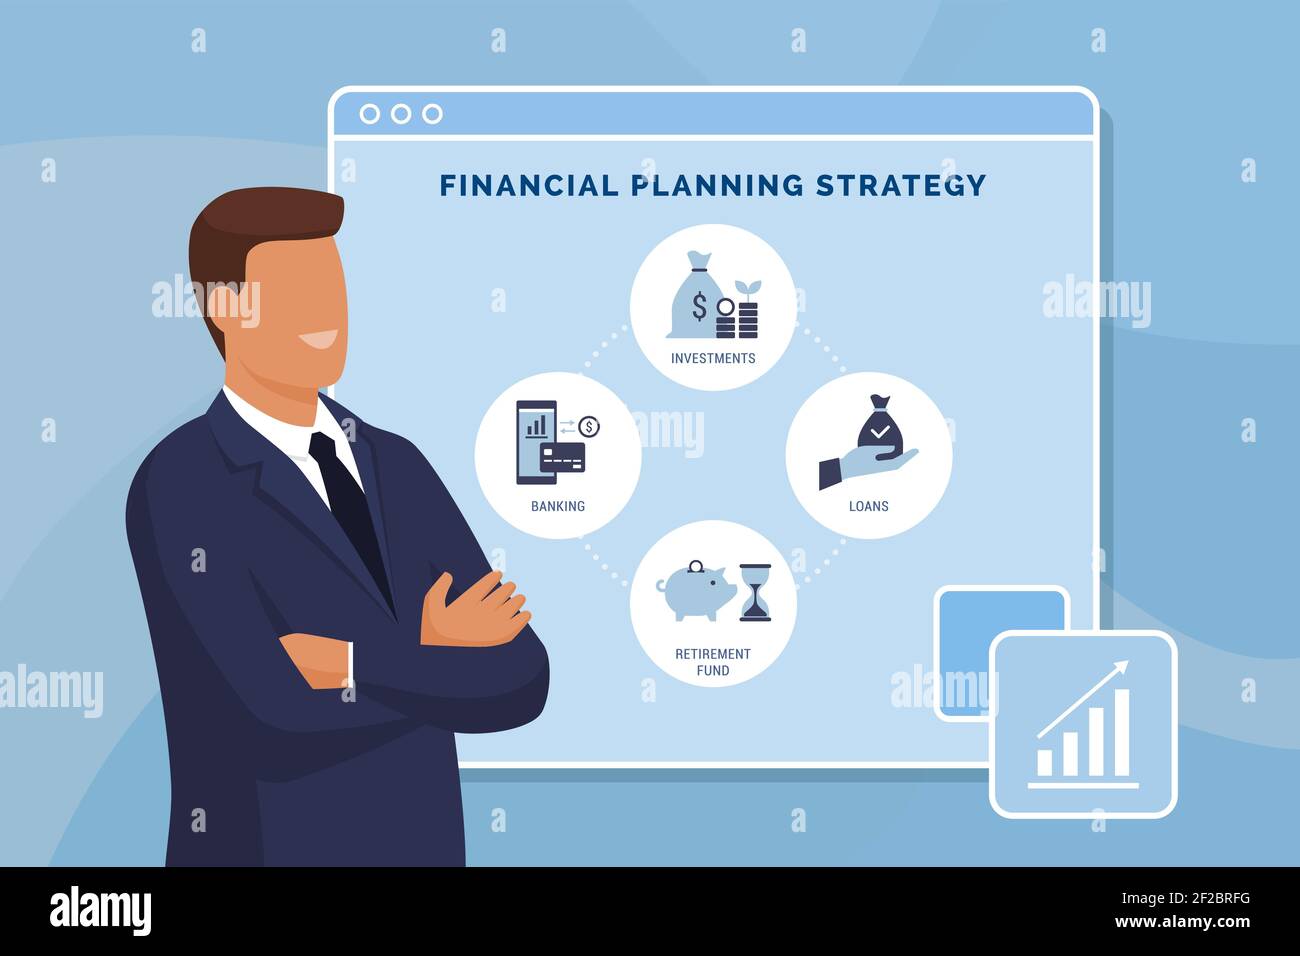 Stratégie de planification financière et infographie sur les services bancaires en ligne avec conseiller financier Illustration de Vecteur